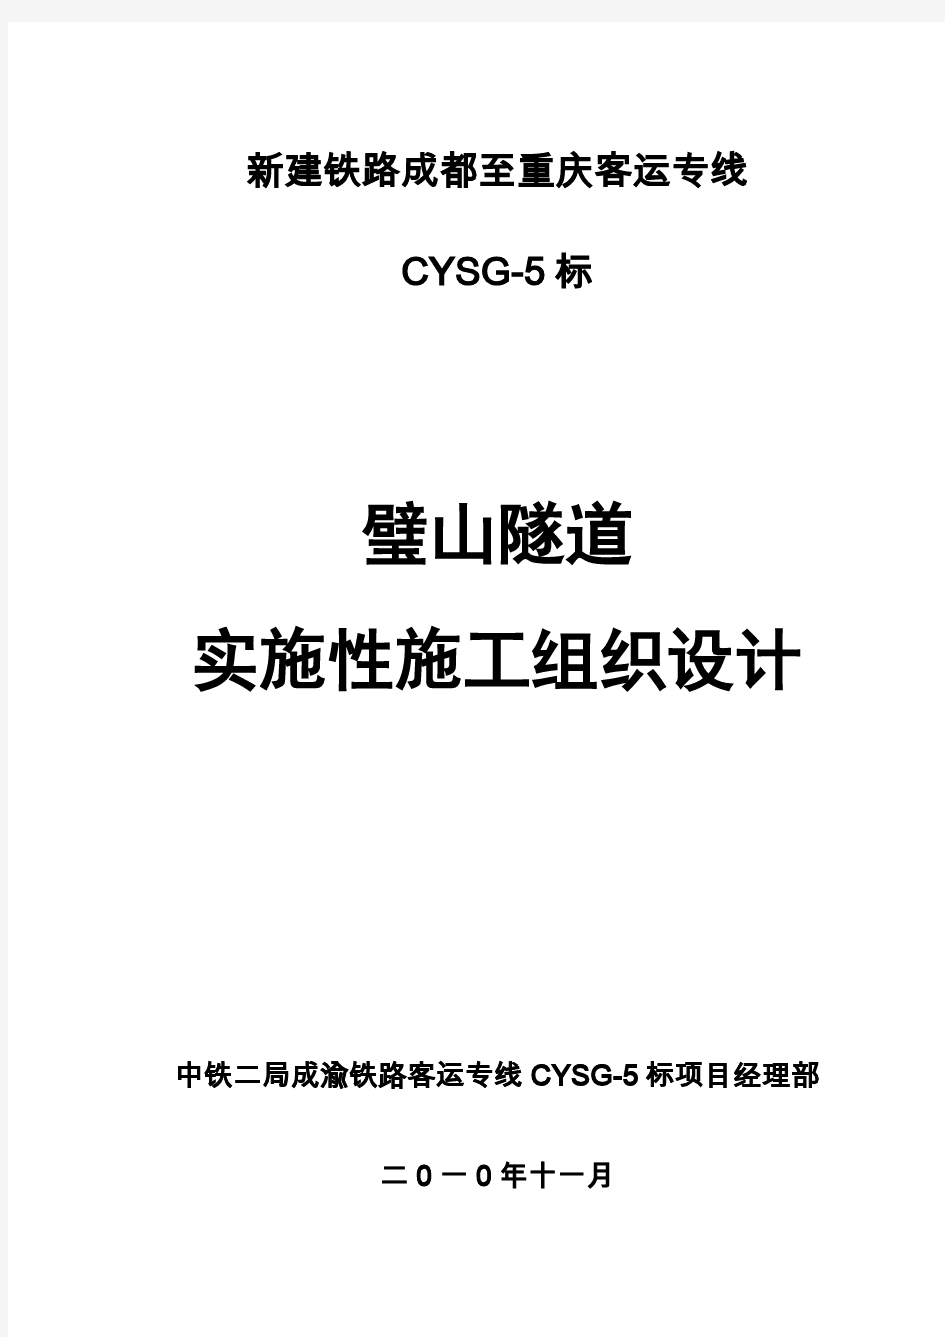 中铁二局股份有限公司成渝客运专线CYSG-5标项目部璧山隧道施工组织设计